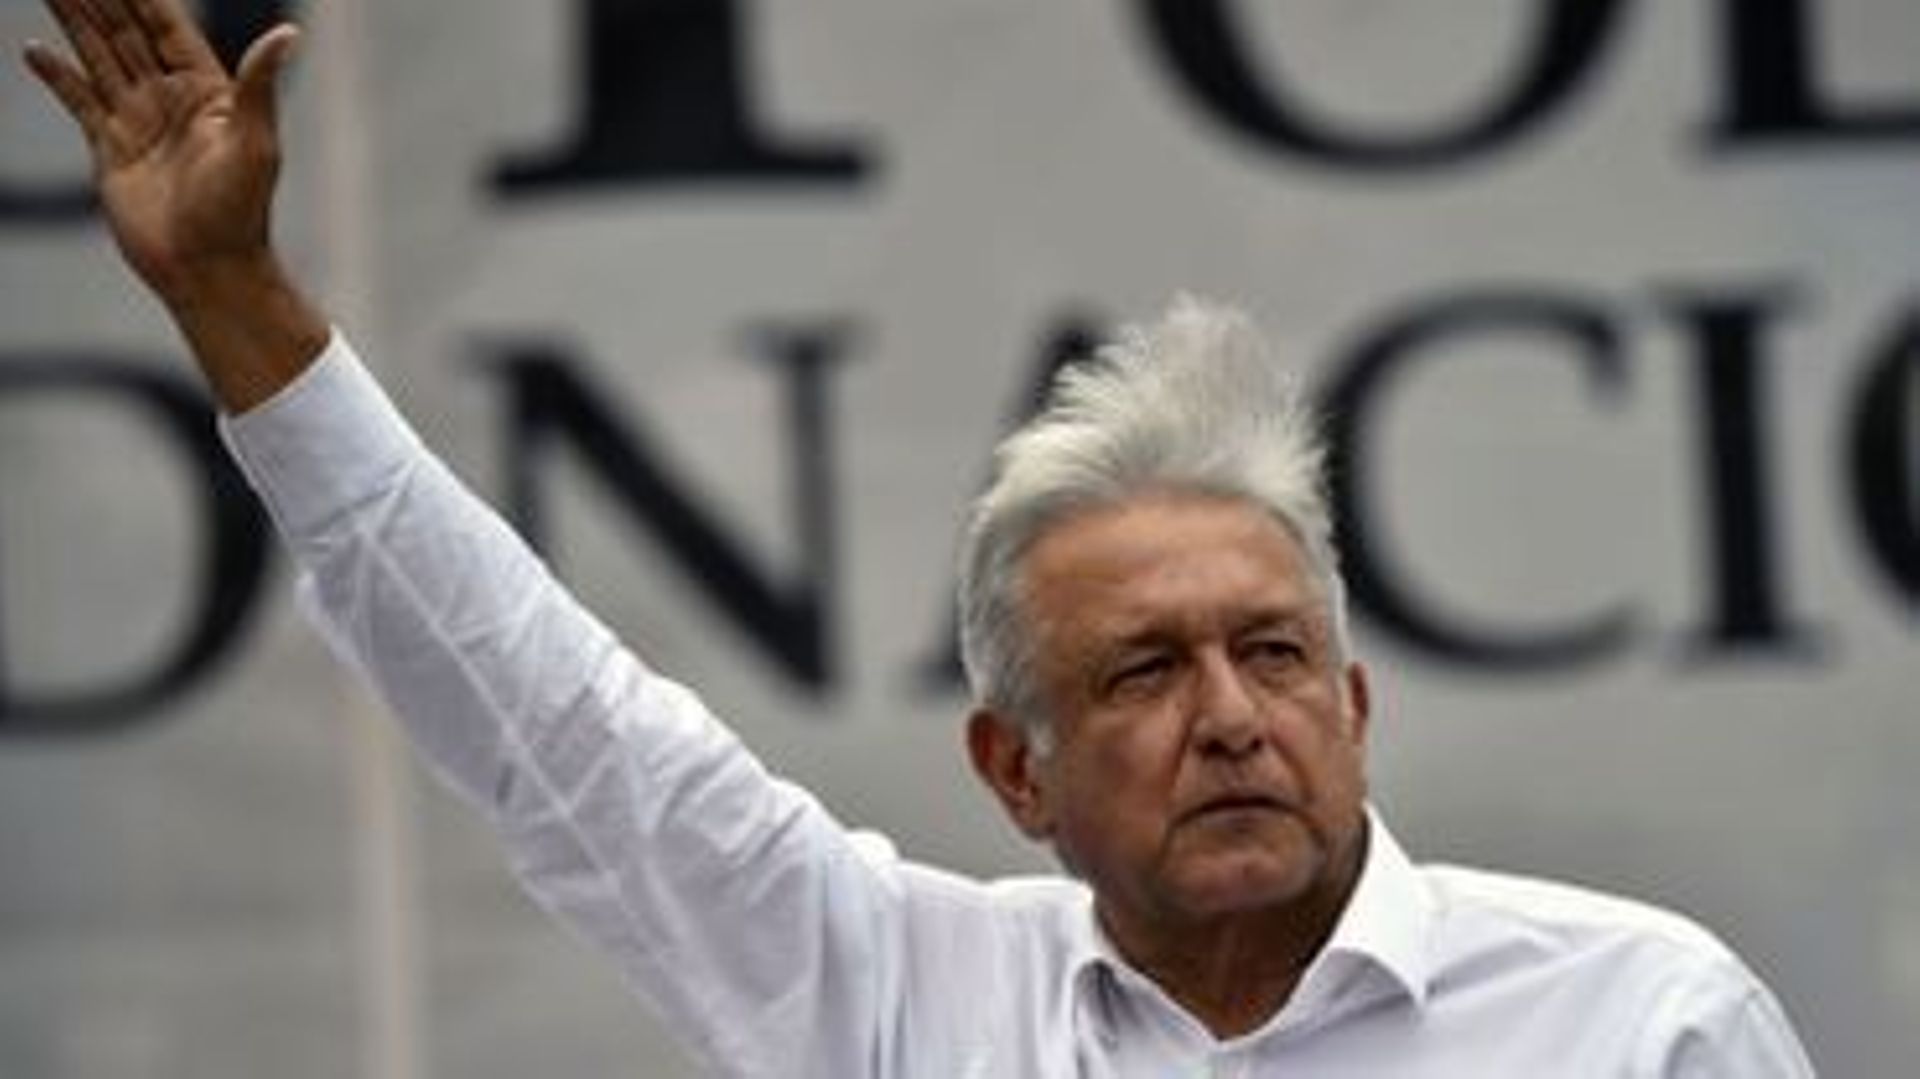 Présidentielle au Mexique: le candidat de la gauche favori pour son discours "anti-corruption"